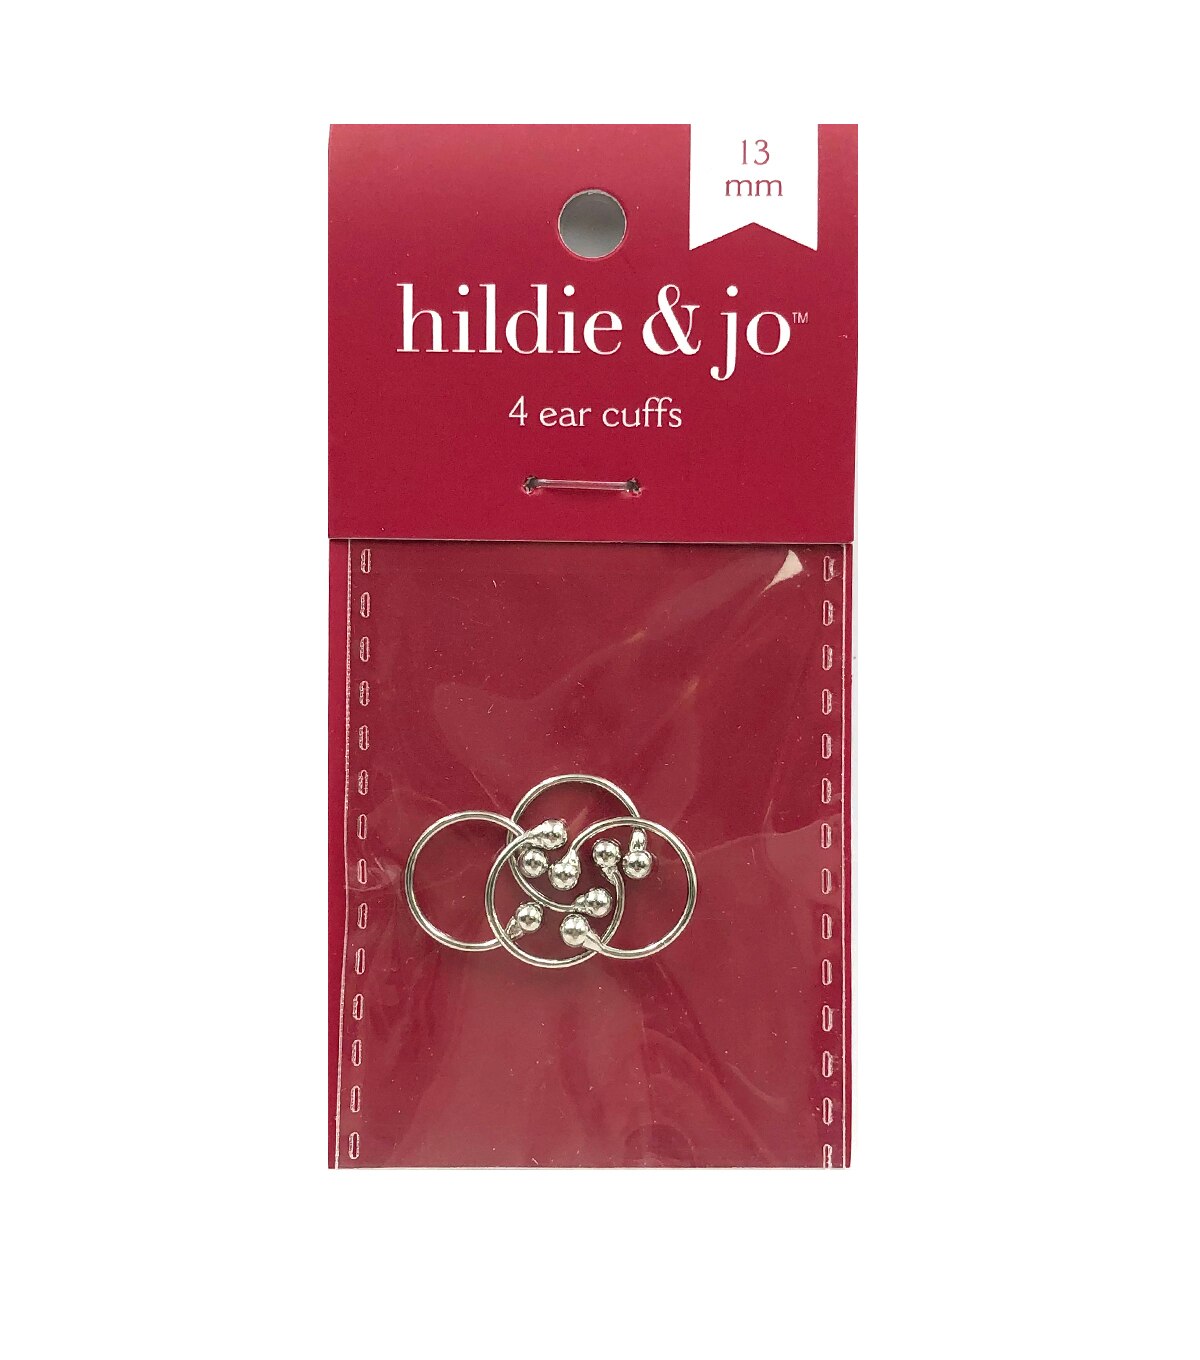 13mm Silver Ear Cuffs 4pk by hildie & jo